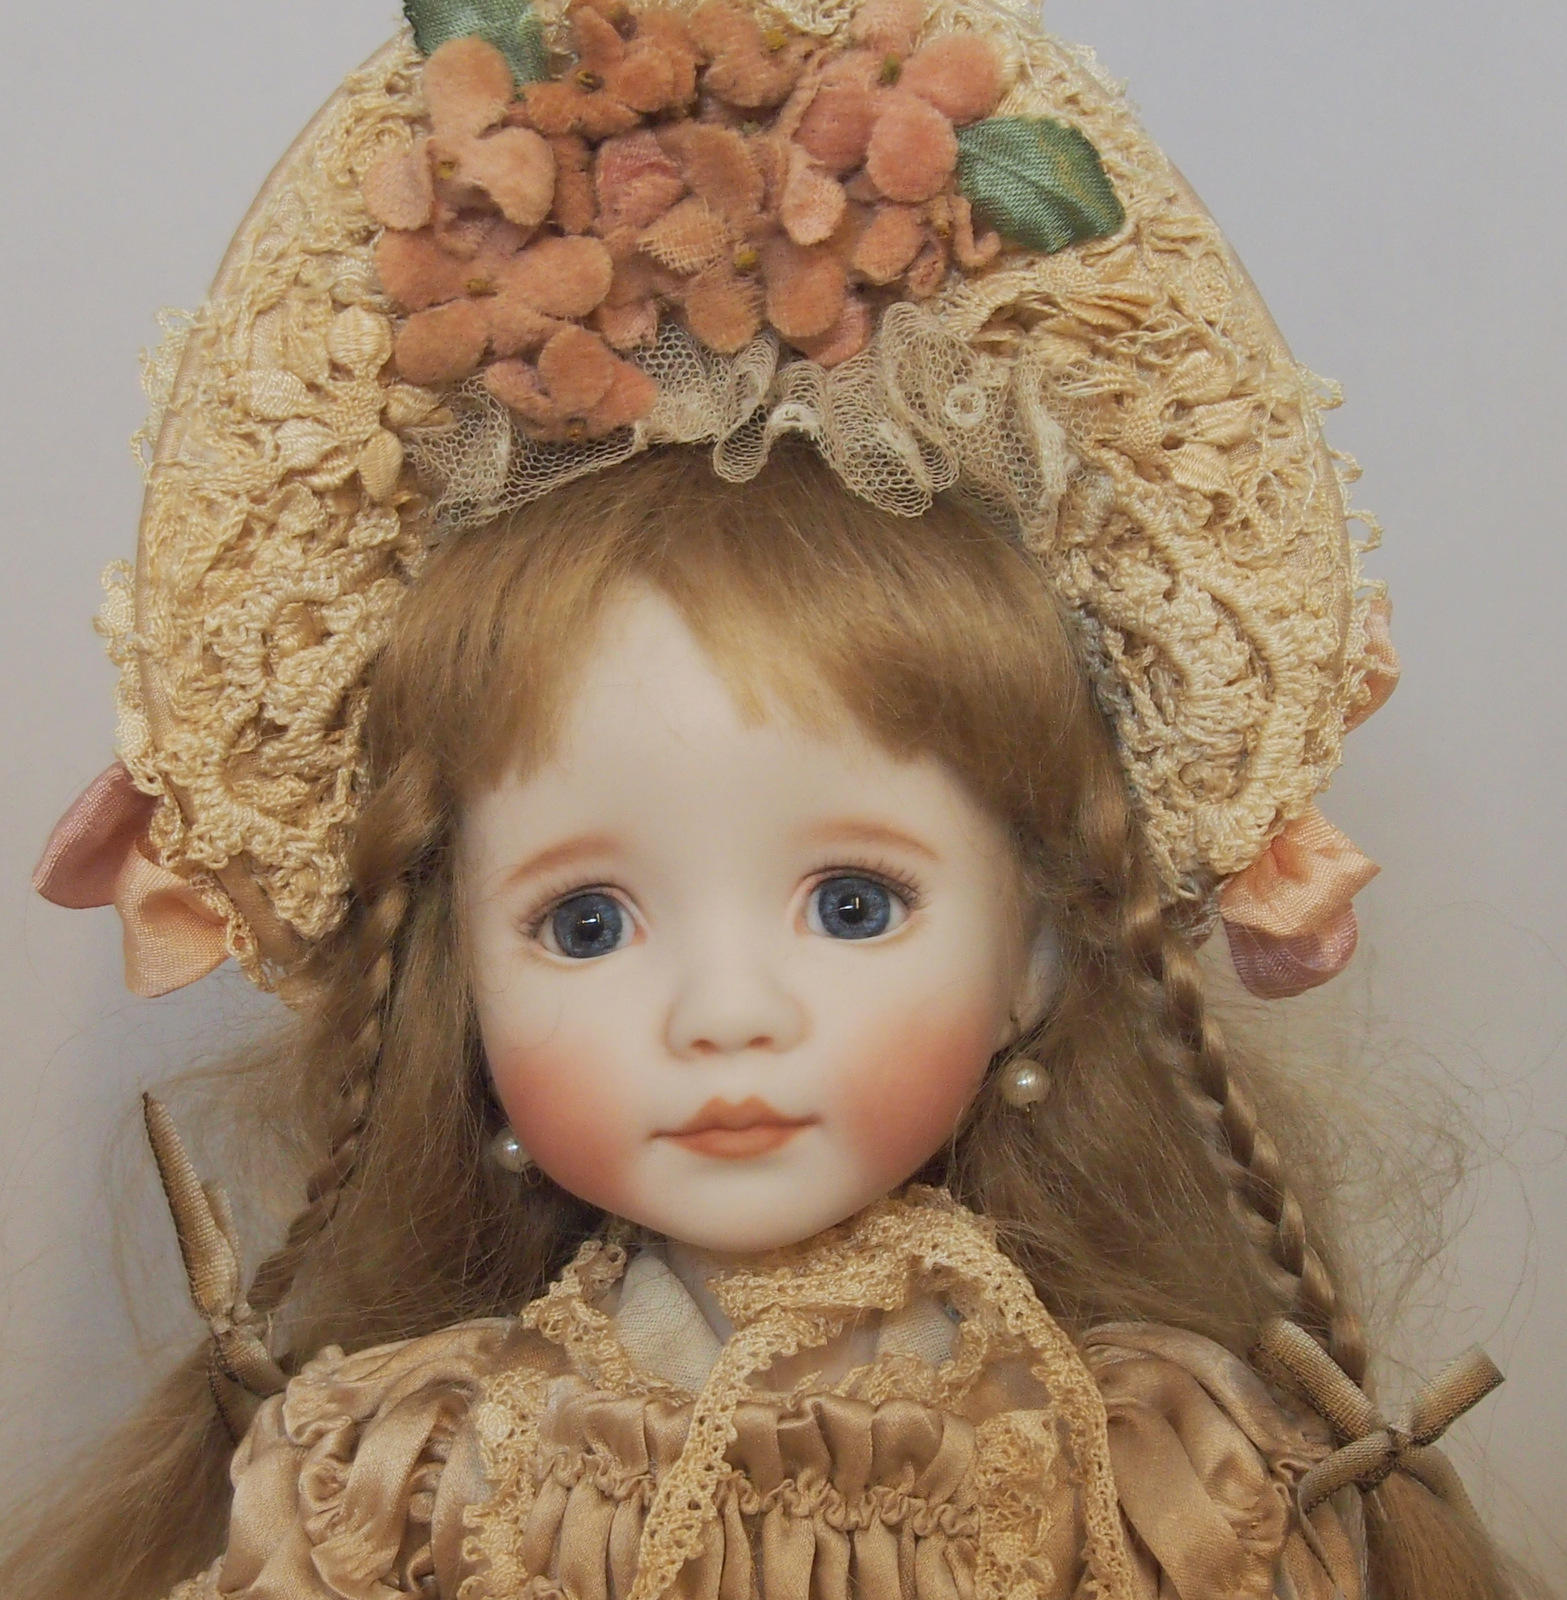 買得 白肌なパオラ姫 パオラレイナ パオラドール 創作人形 アートドール ビスクドール おもちゃ/人形